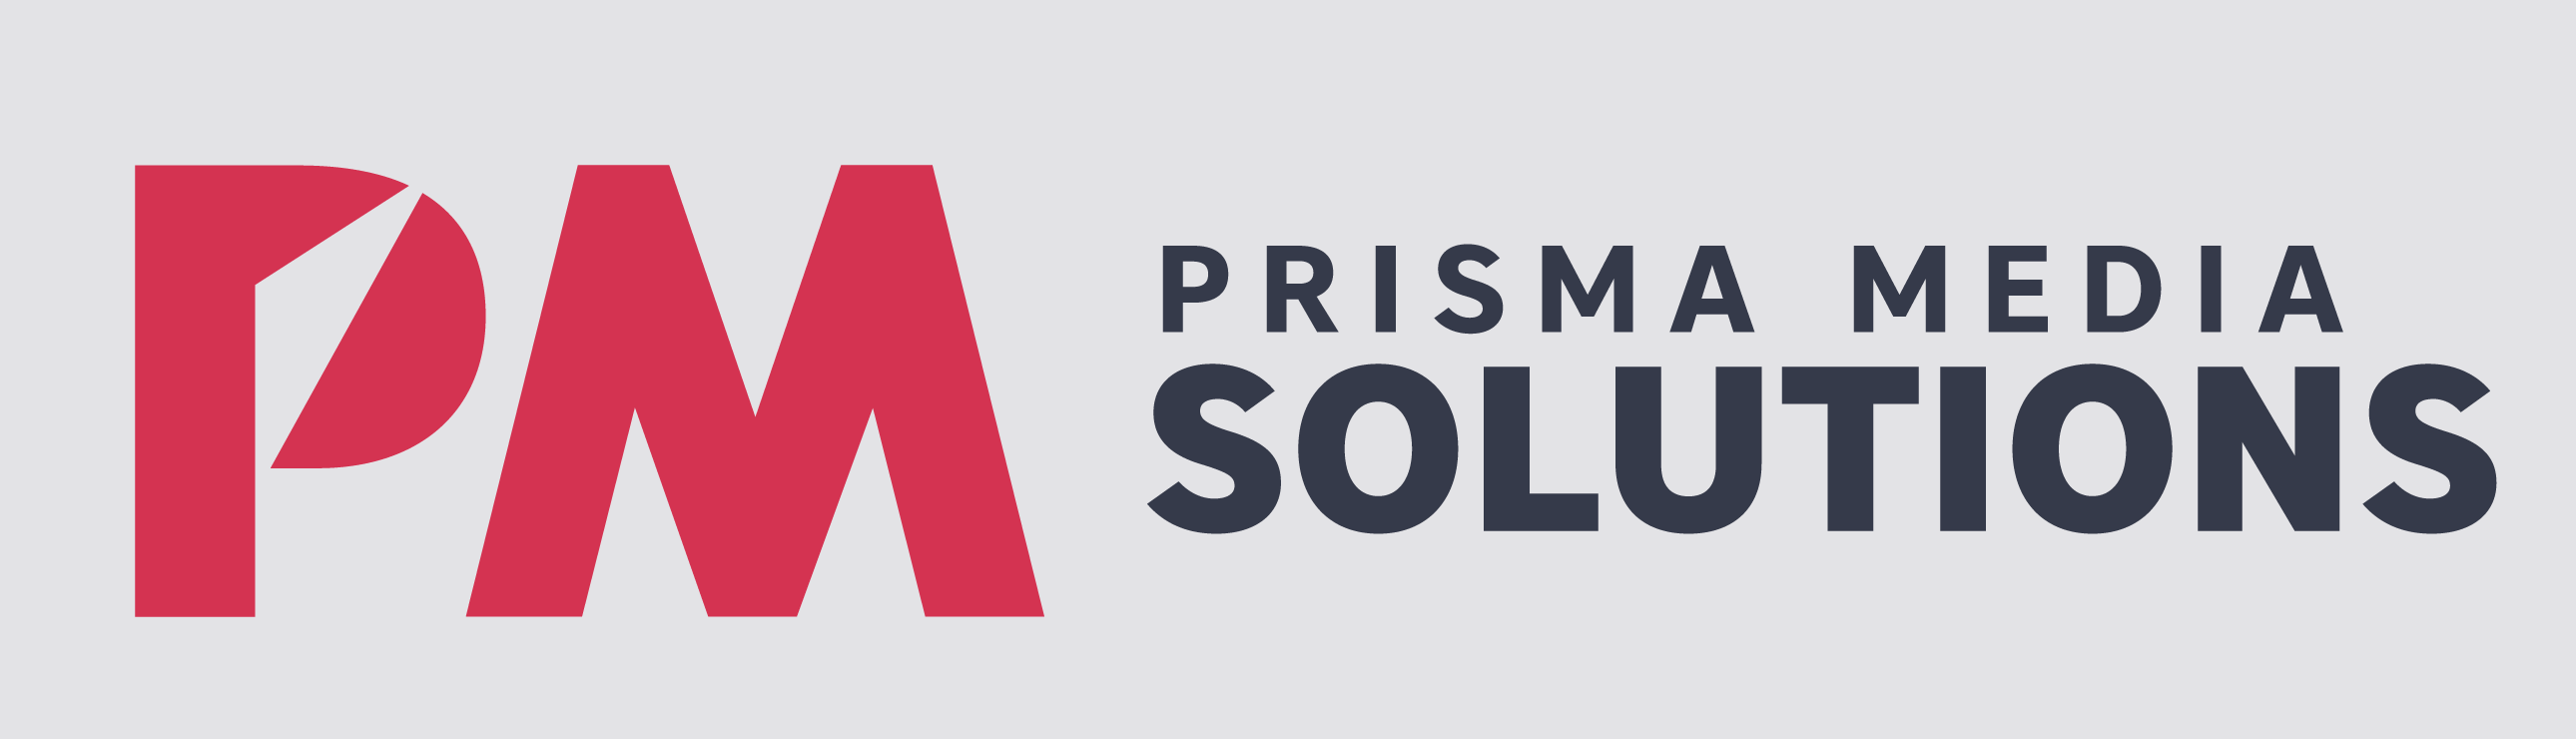 Prisma Media Solutions s'engage pour une pub plus responsable